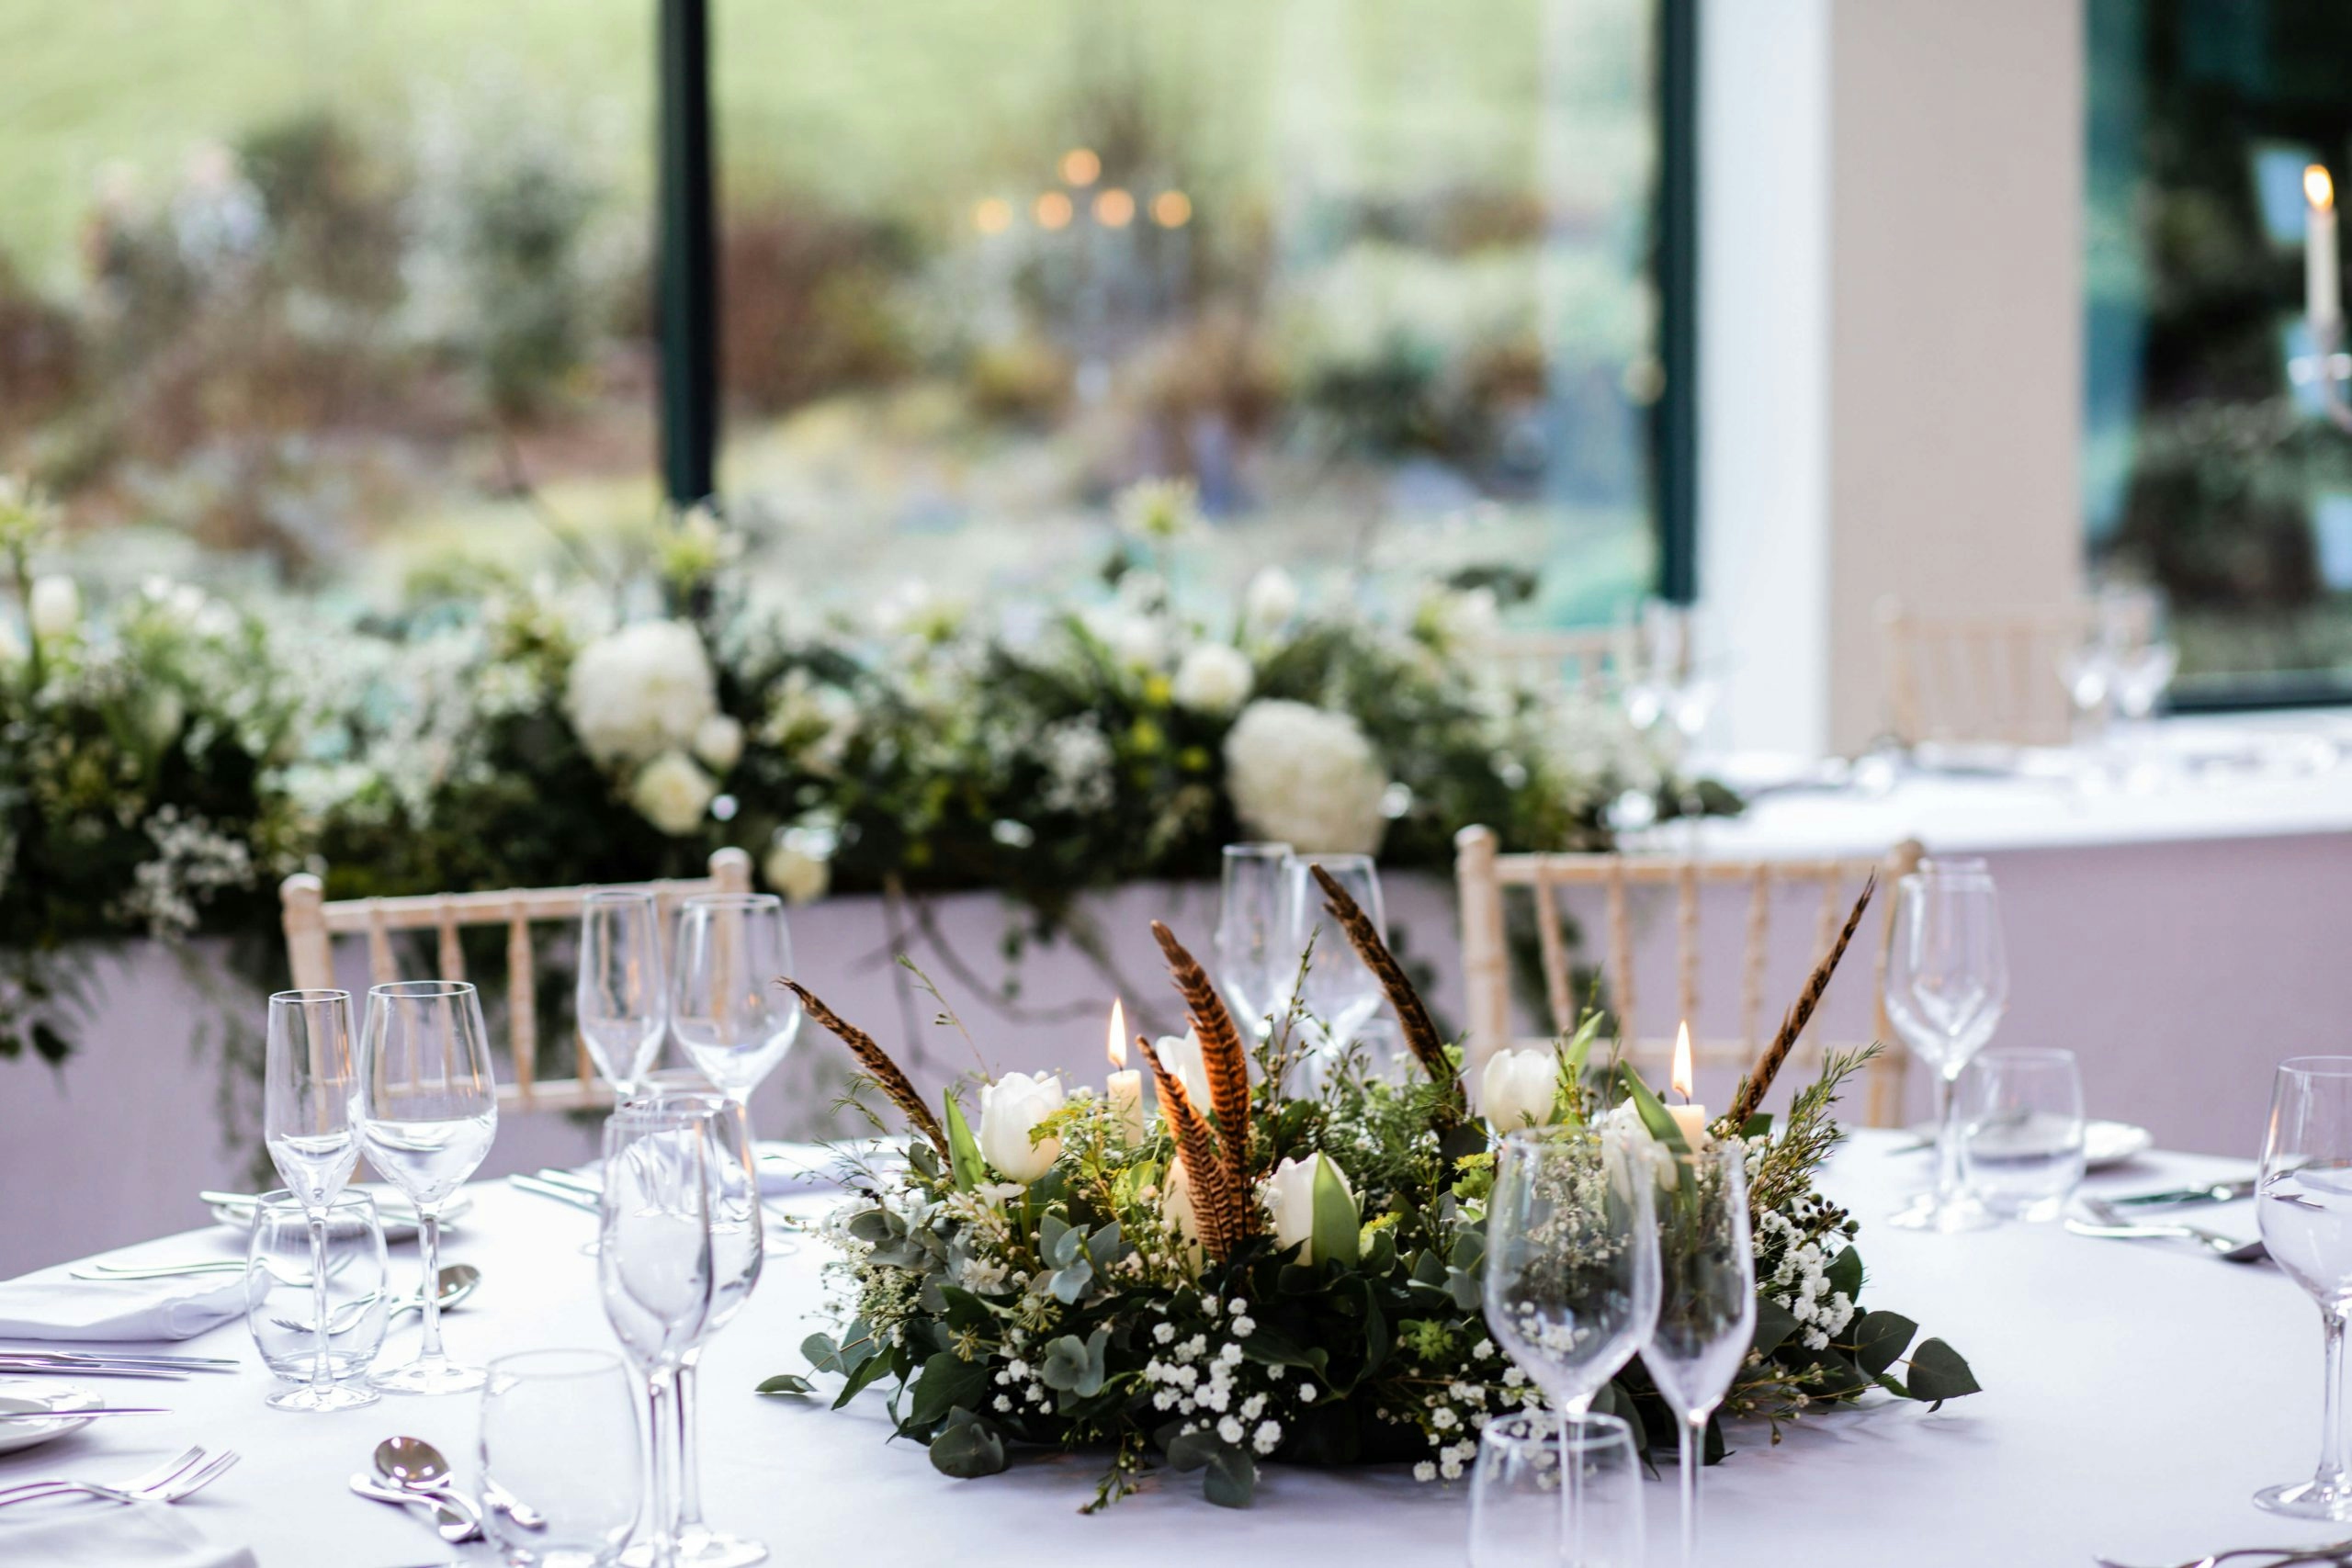 Nine Ways to Plan An Eco-Friendly Wedding